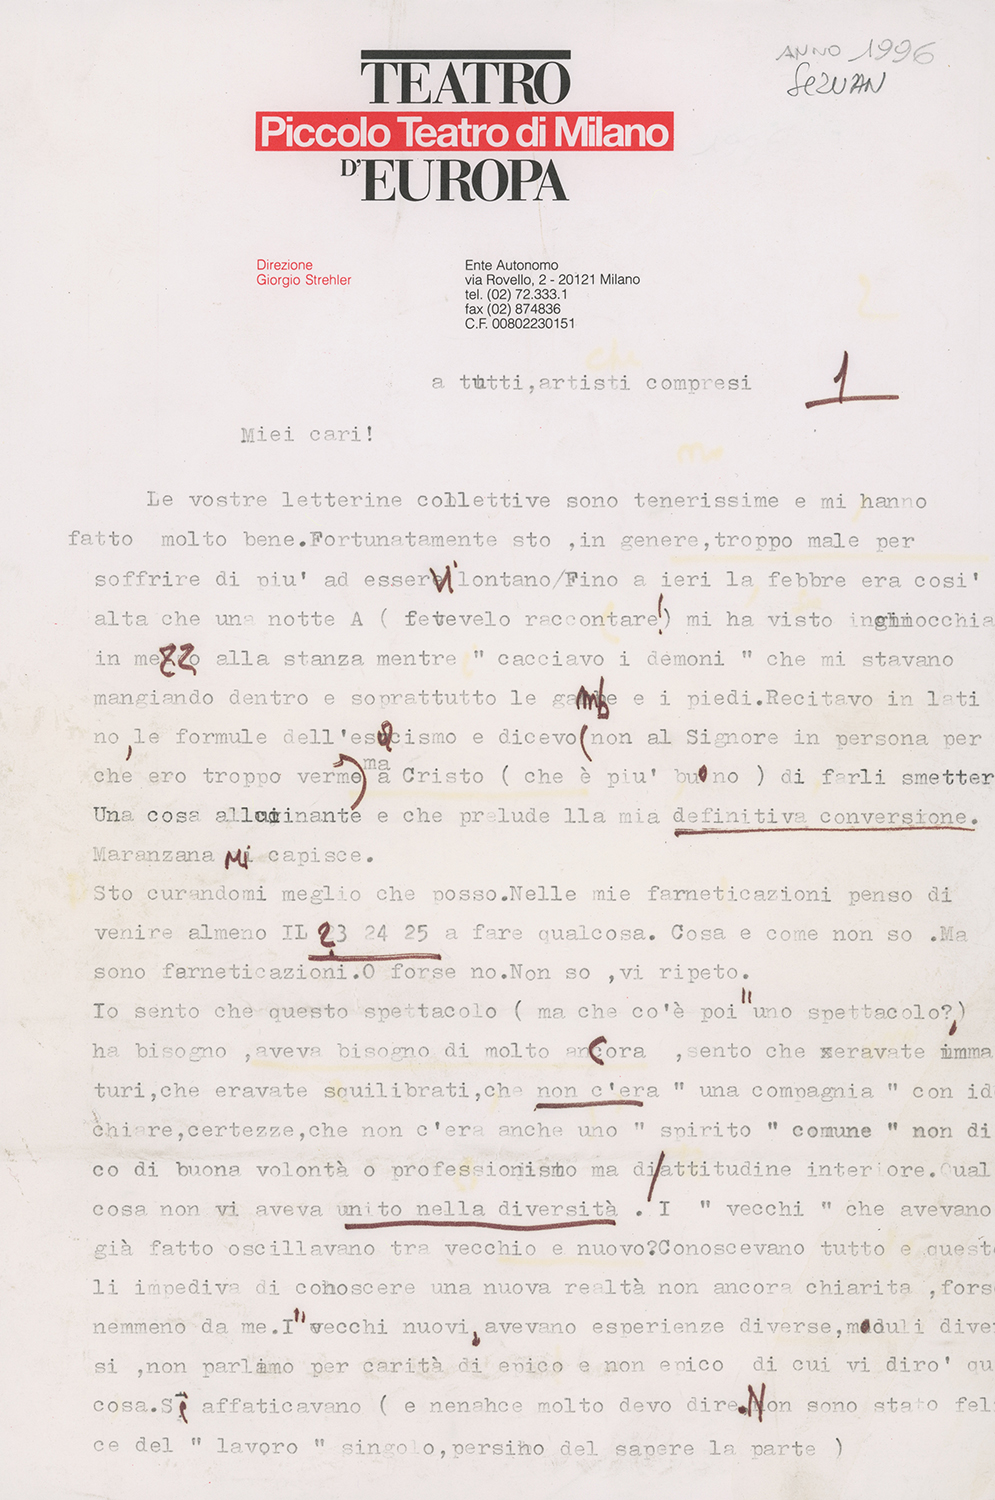 Prima pagina di una lettera di Strehler alla compagnia, nel periodo delle prove - Archivio Piccolo Teatro di Milano 